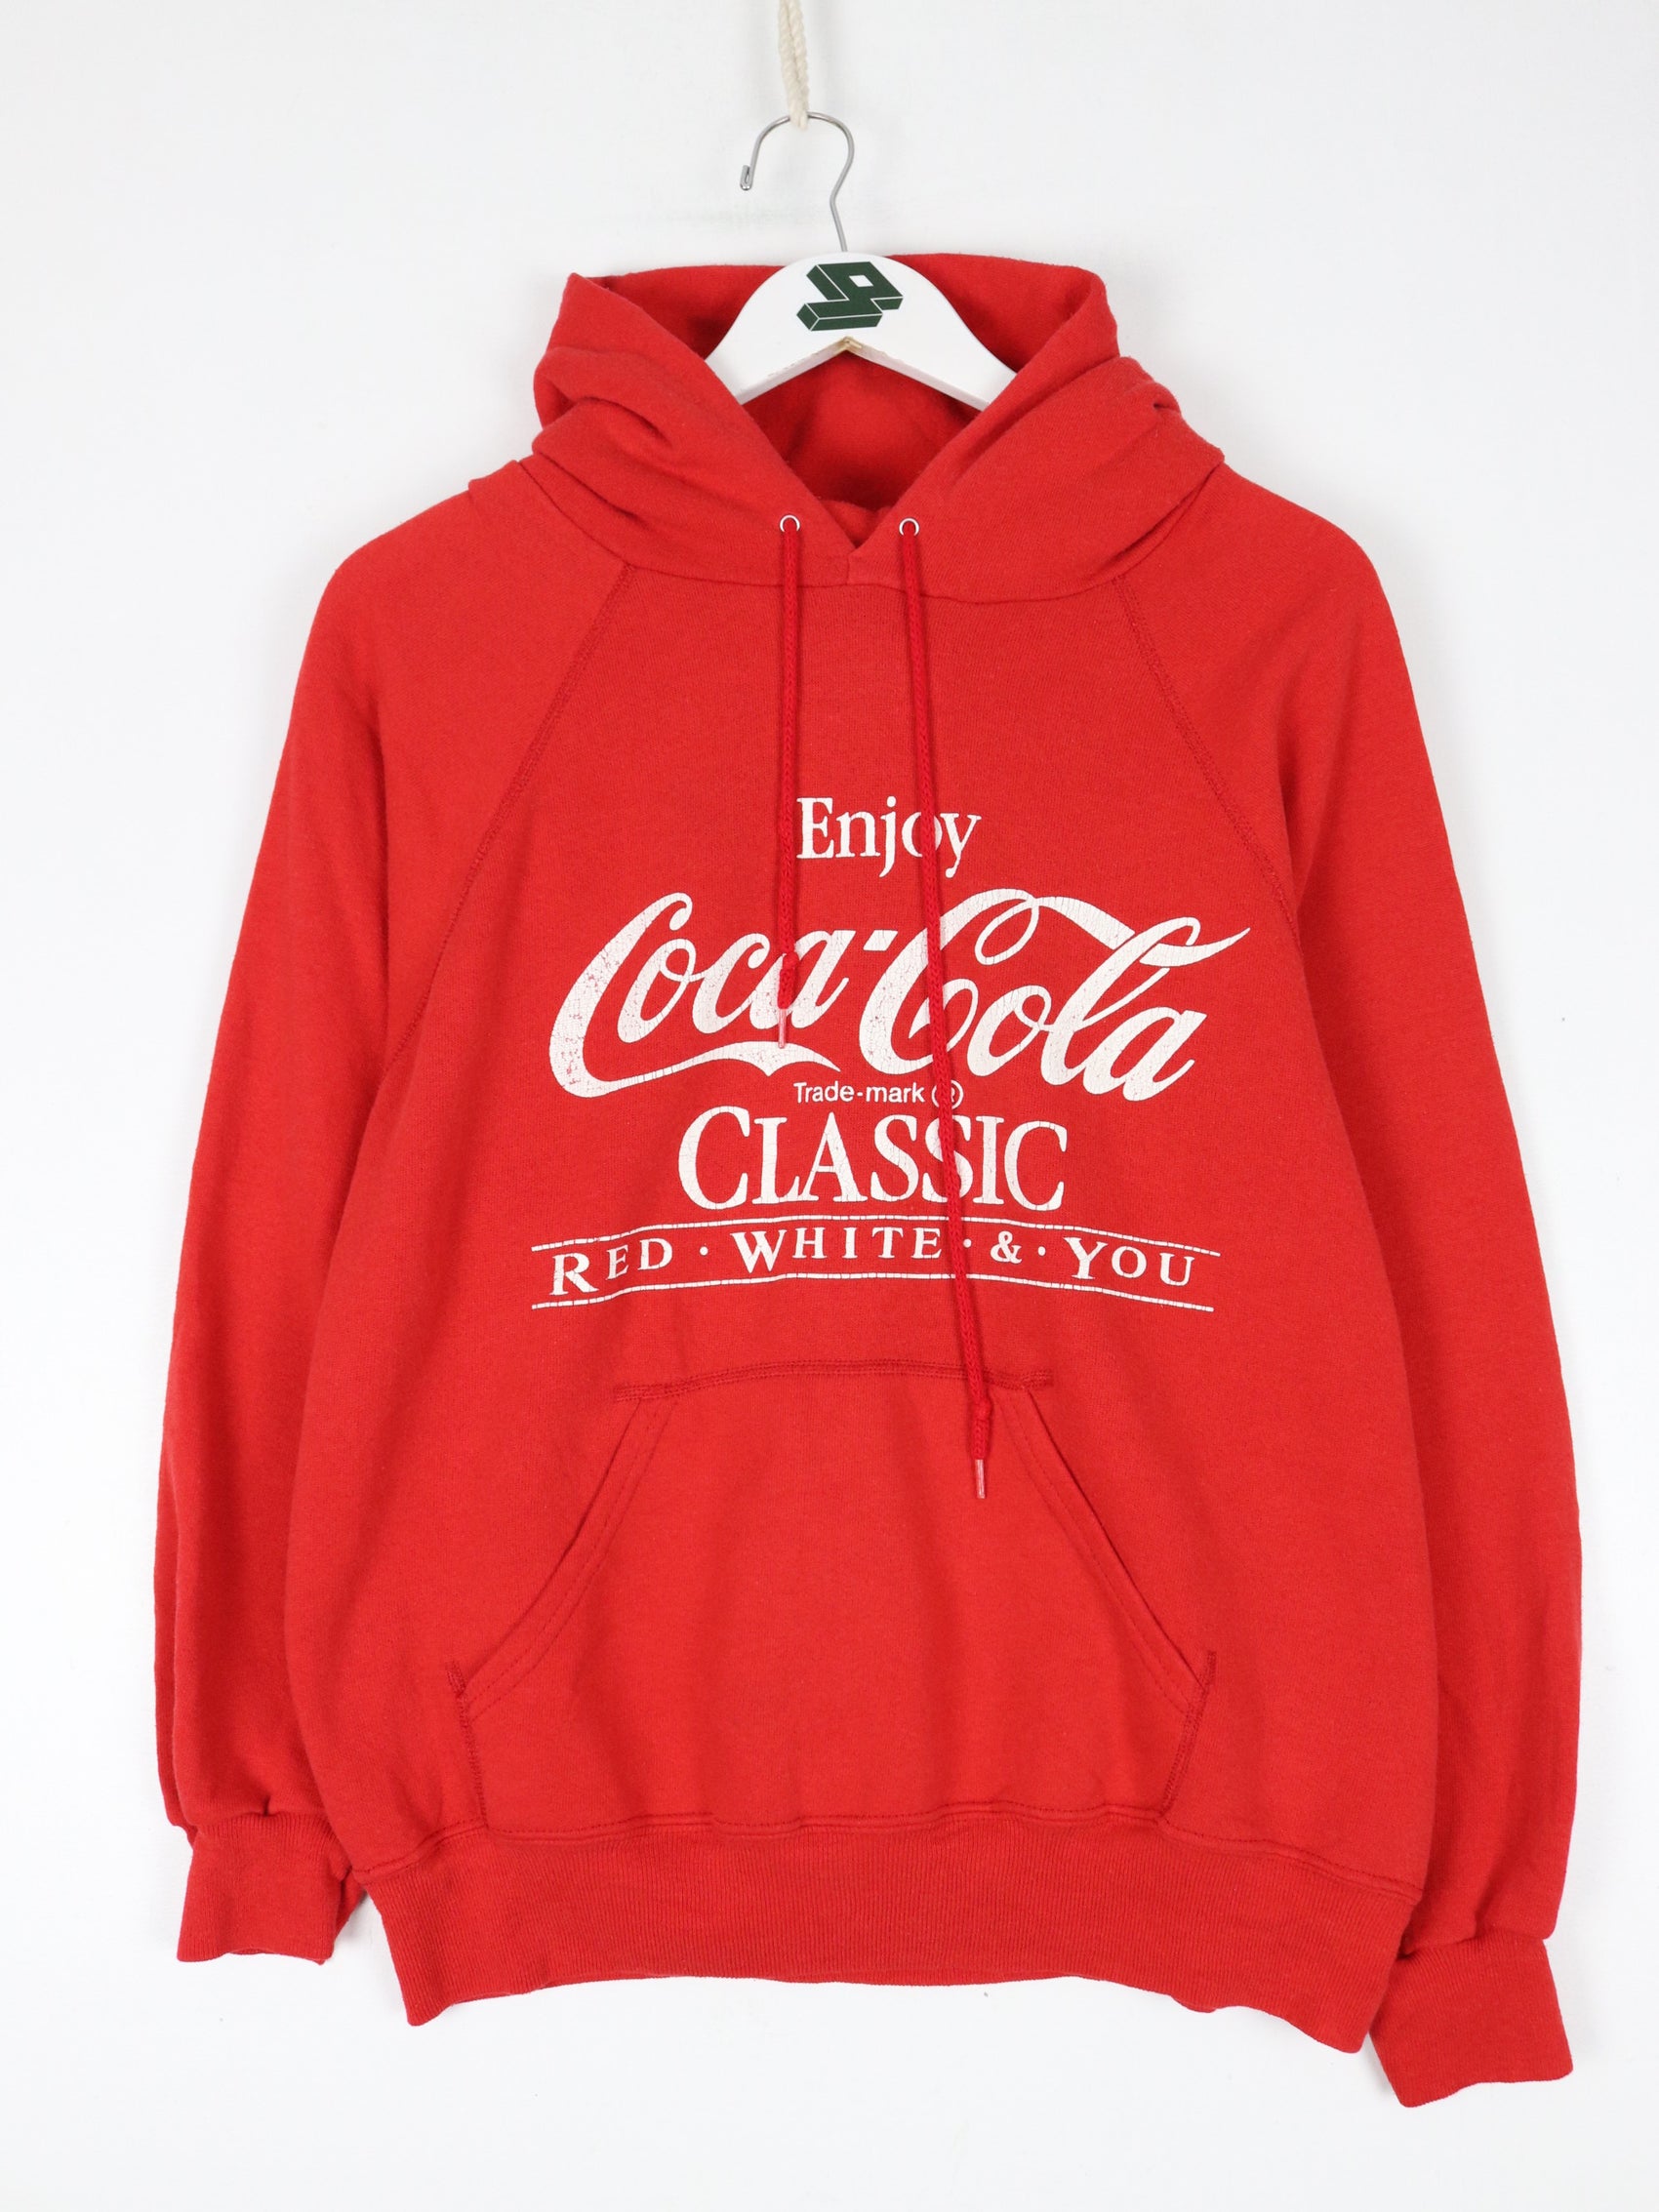 Vintage Coca Cola Sweatshirt Fits Mens Medium Red Hoodie 80s